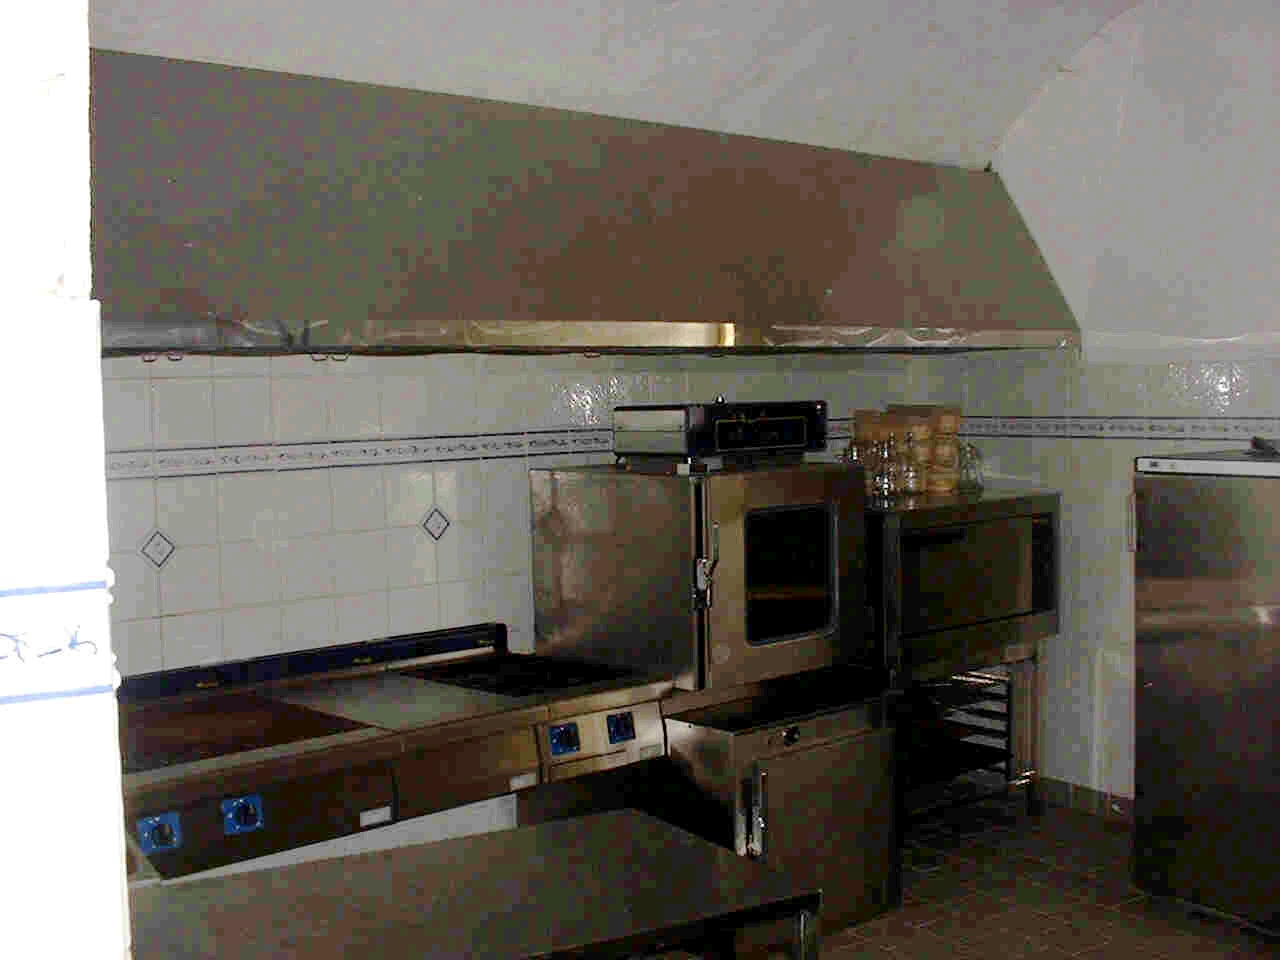 Chateau prep kitchen